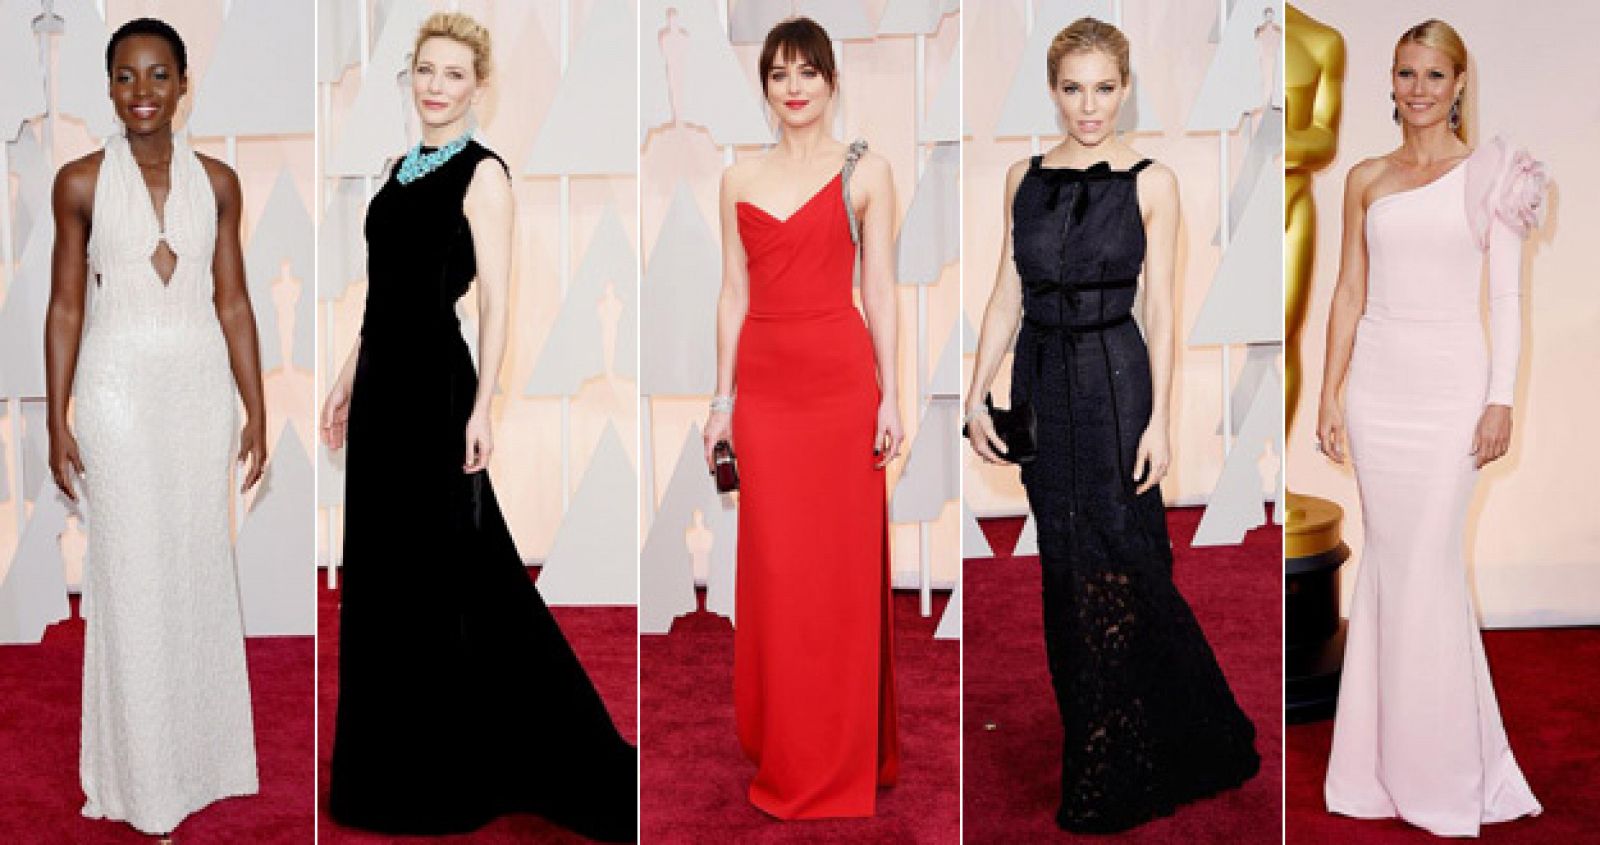 Las más elegantes de los Oscars 2015.